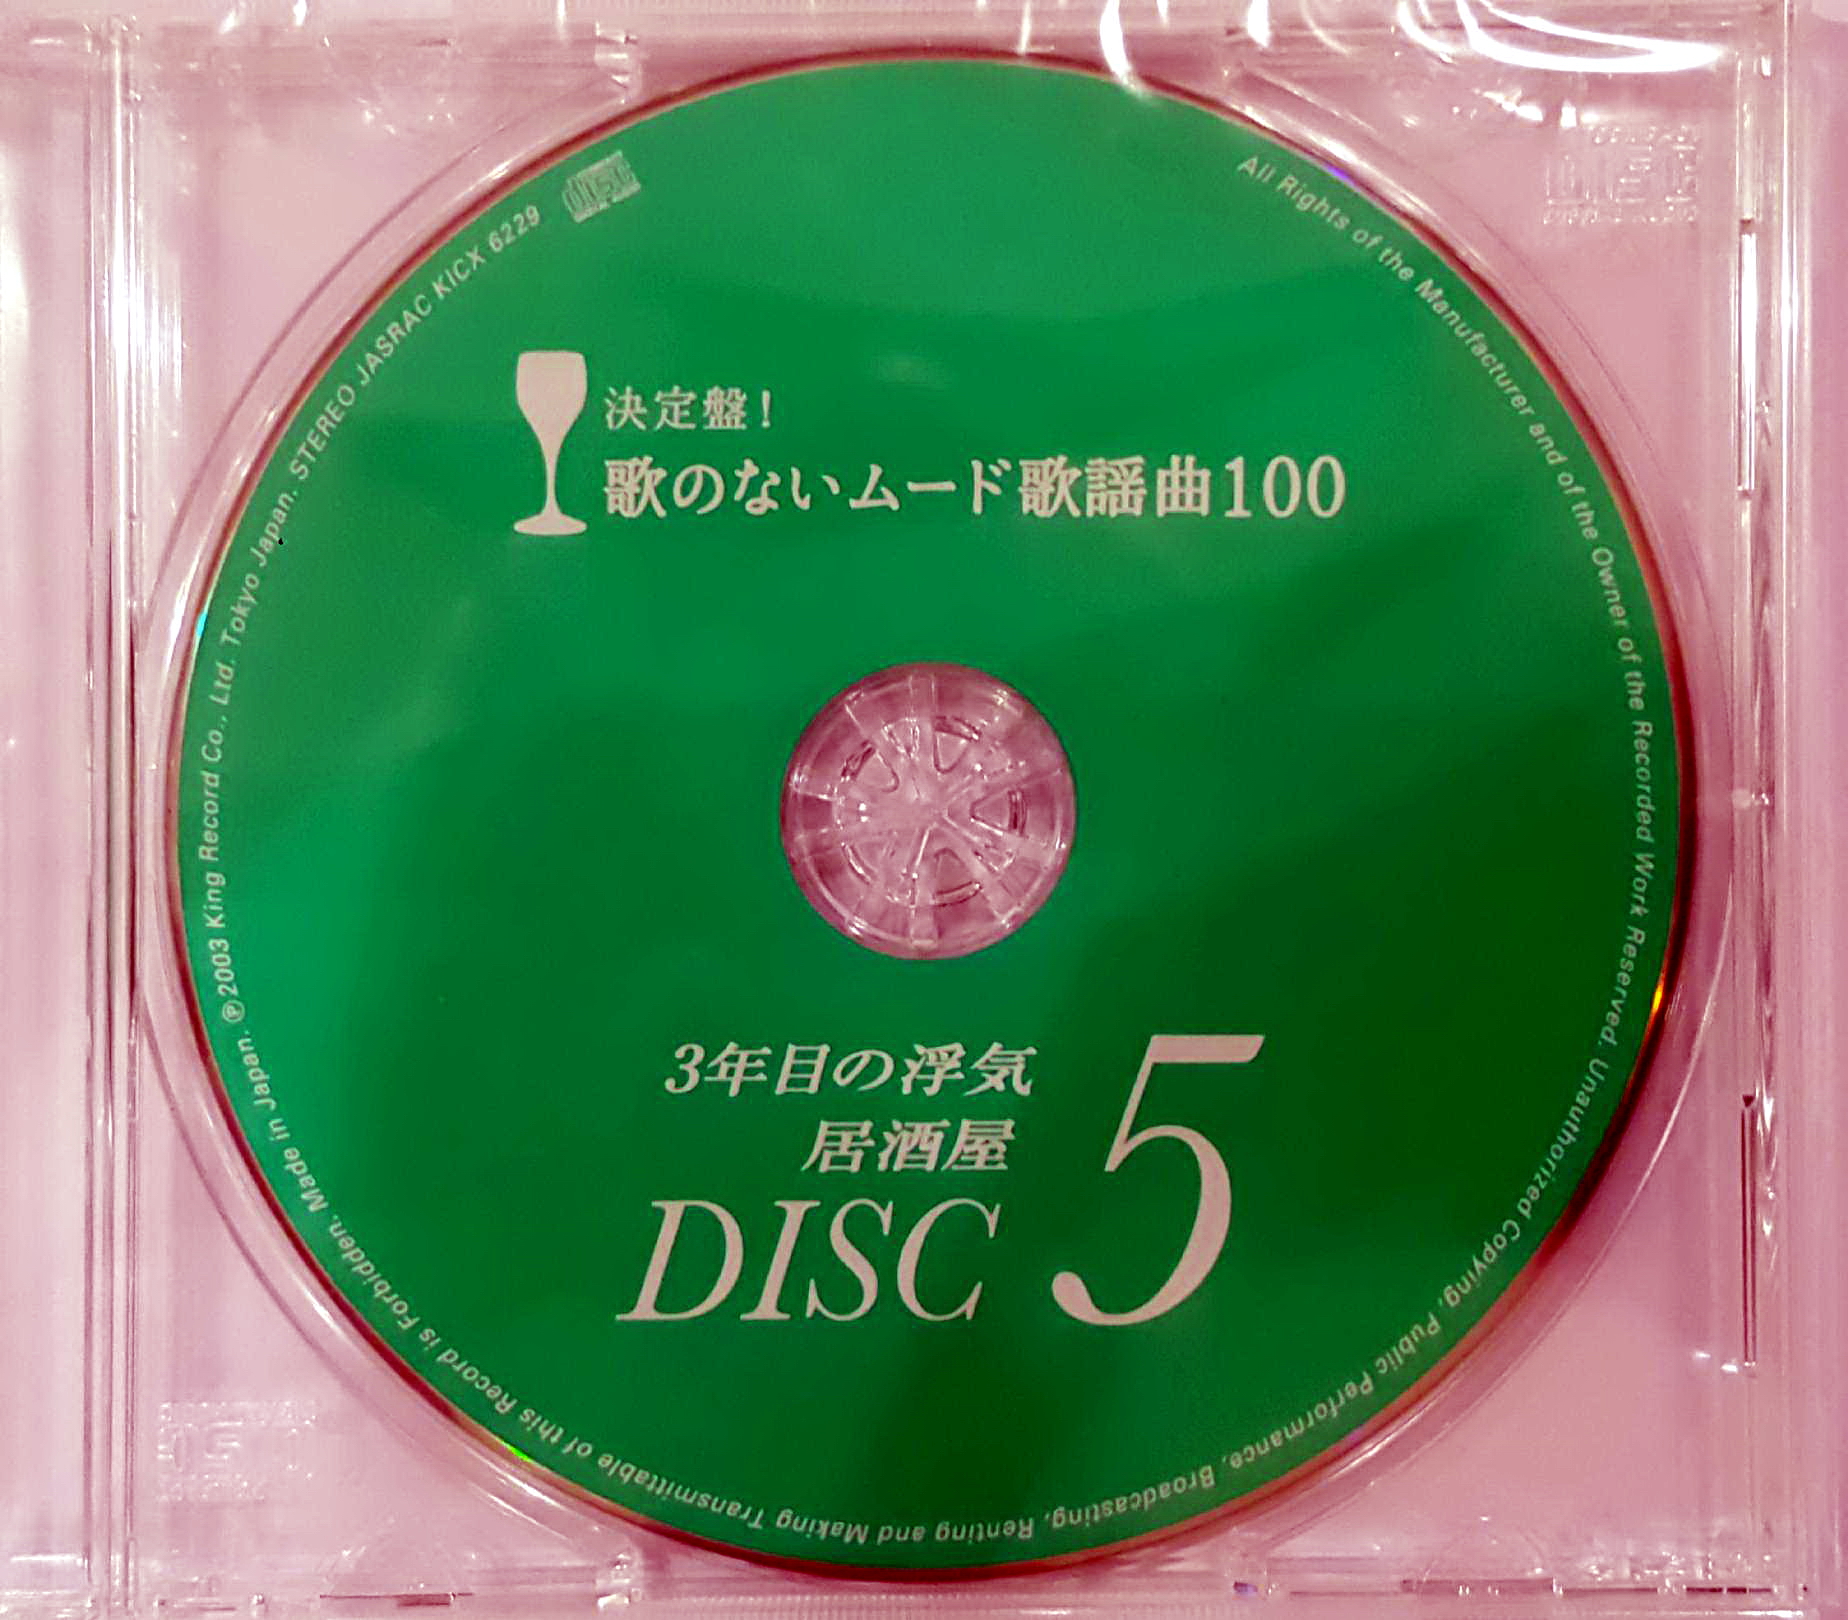 disc5.jpg